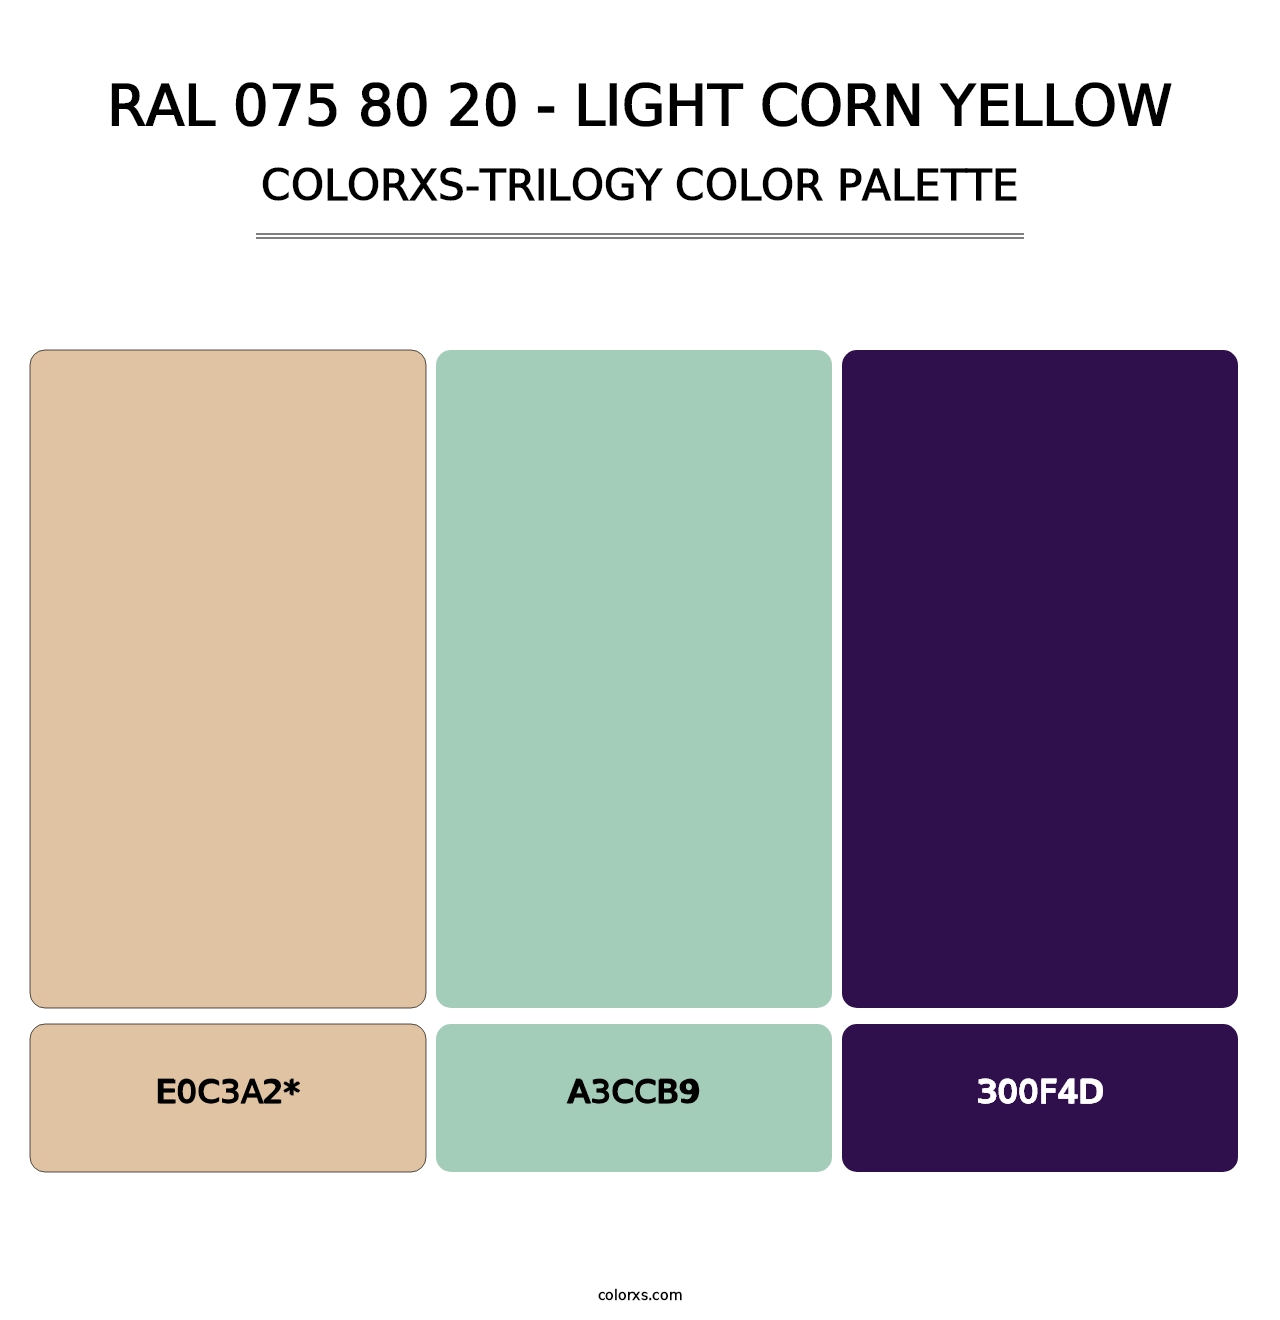 RAL 075 80 20 - Light Corn Yellow - Colorxs Trilogy Palette